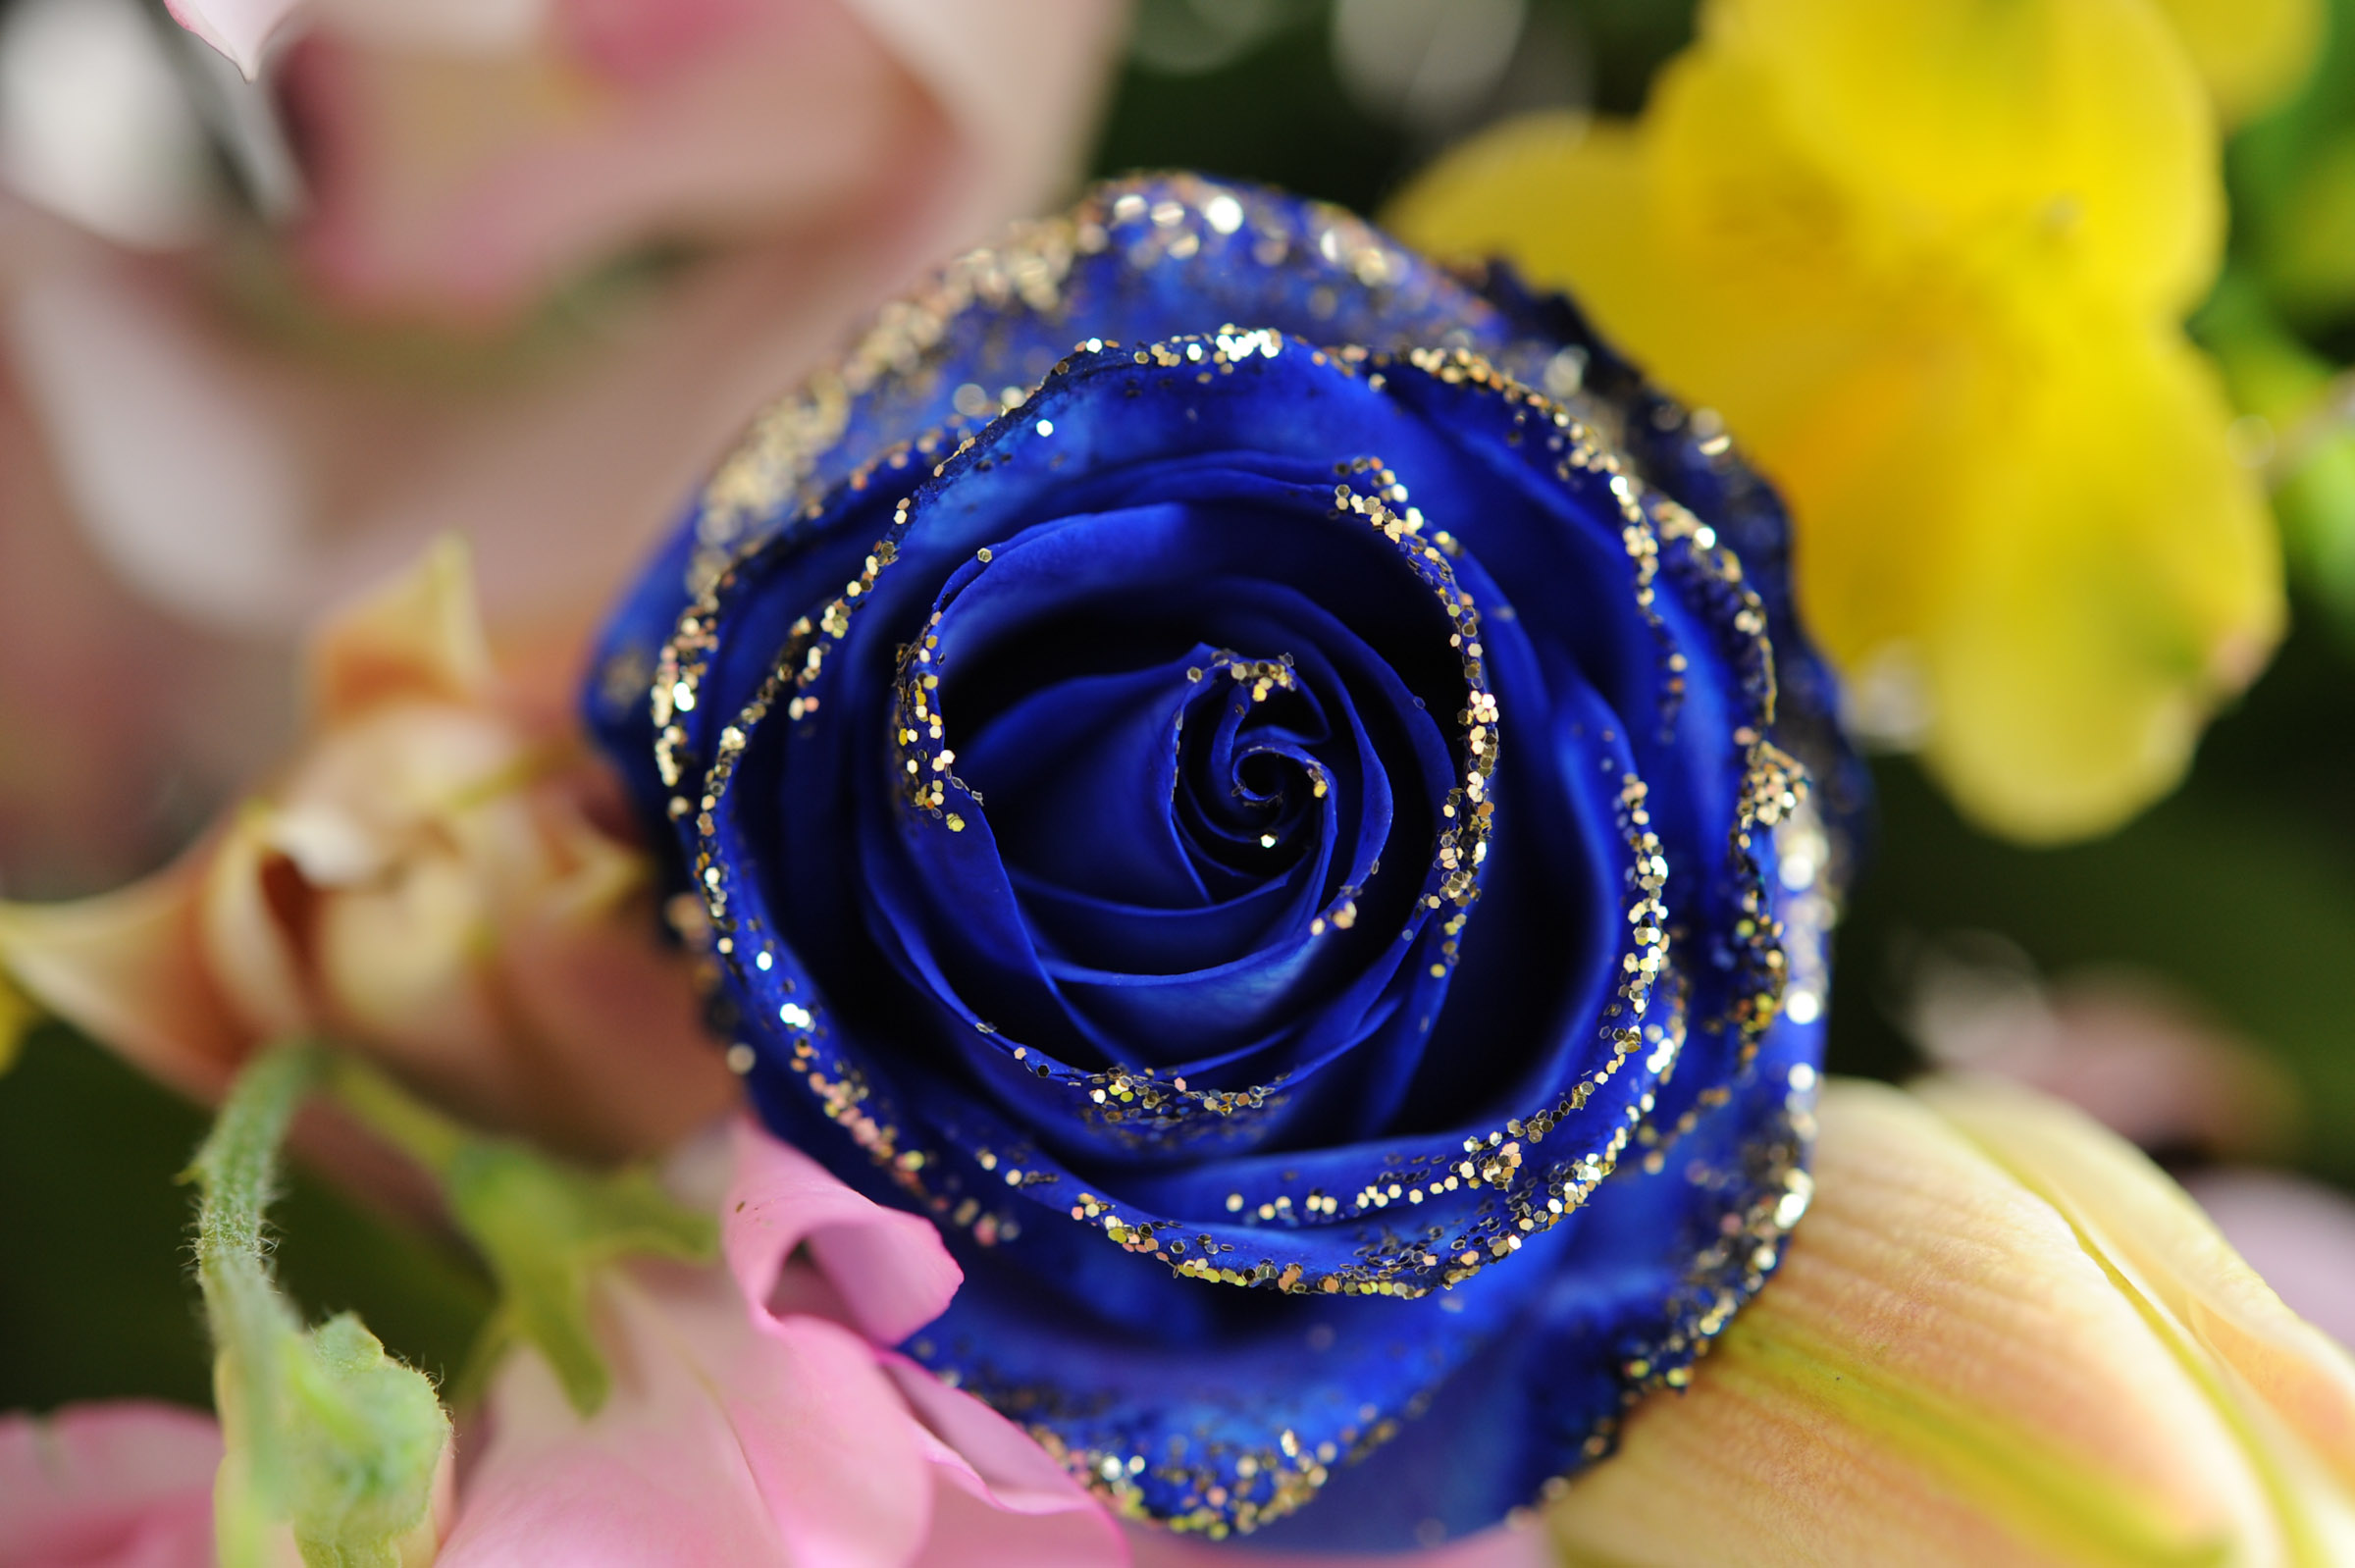 青いバラを上から撮影 少し引いて全体が見える大きさ Hana 花畑photo フリー 無料 の写真素材 壁紙置き場 青色の花